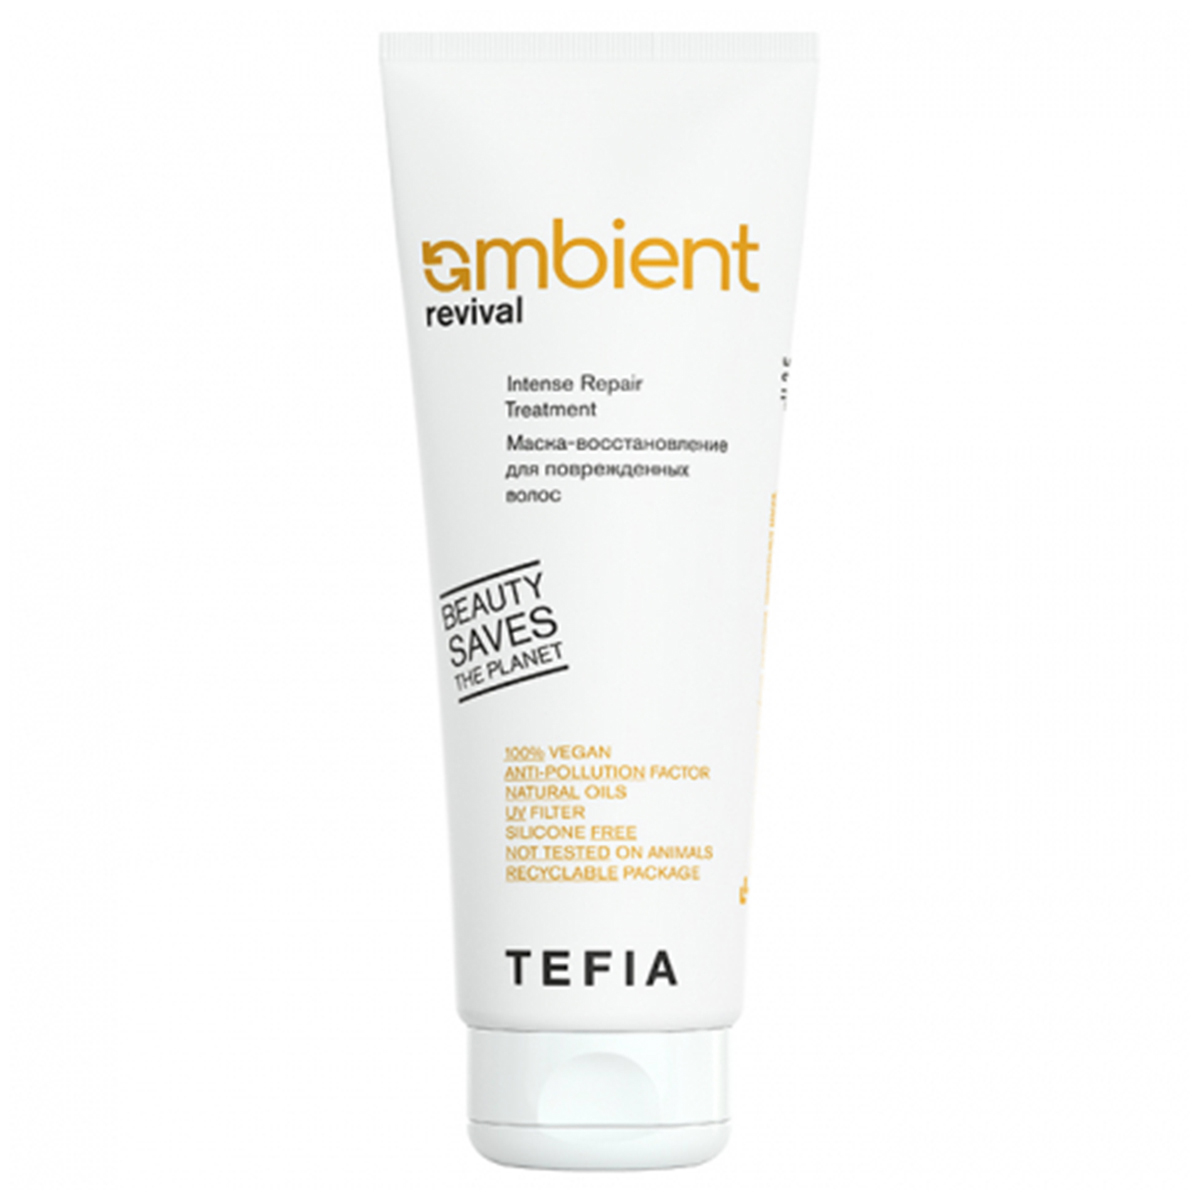 Tefia Маска-восстановление для поврежденных волос, 250 мл (Tefia, Ambient) tefia ambient revival маска восстановление для поврежденных волос 500 мл